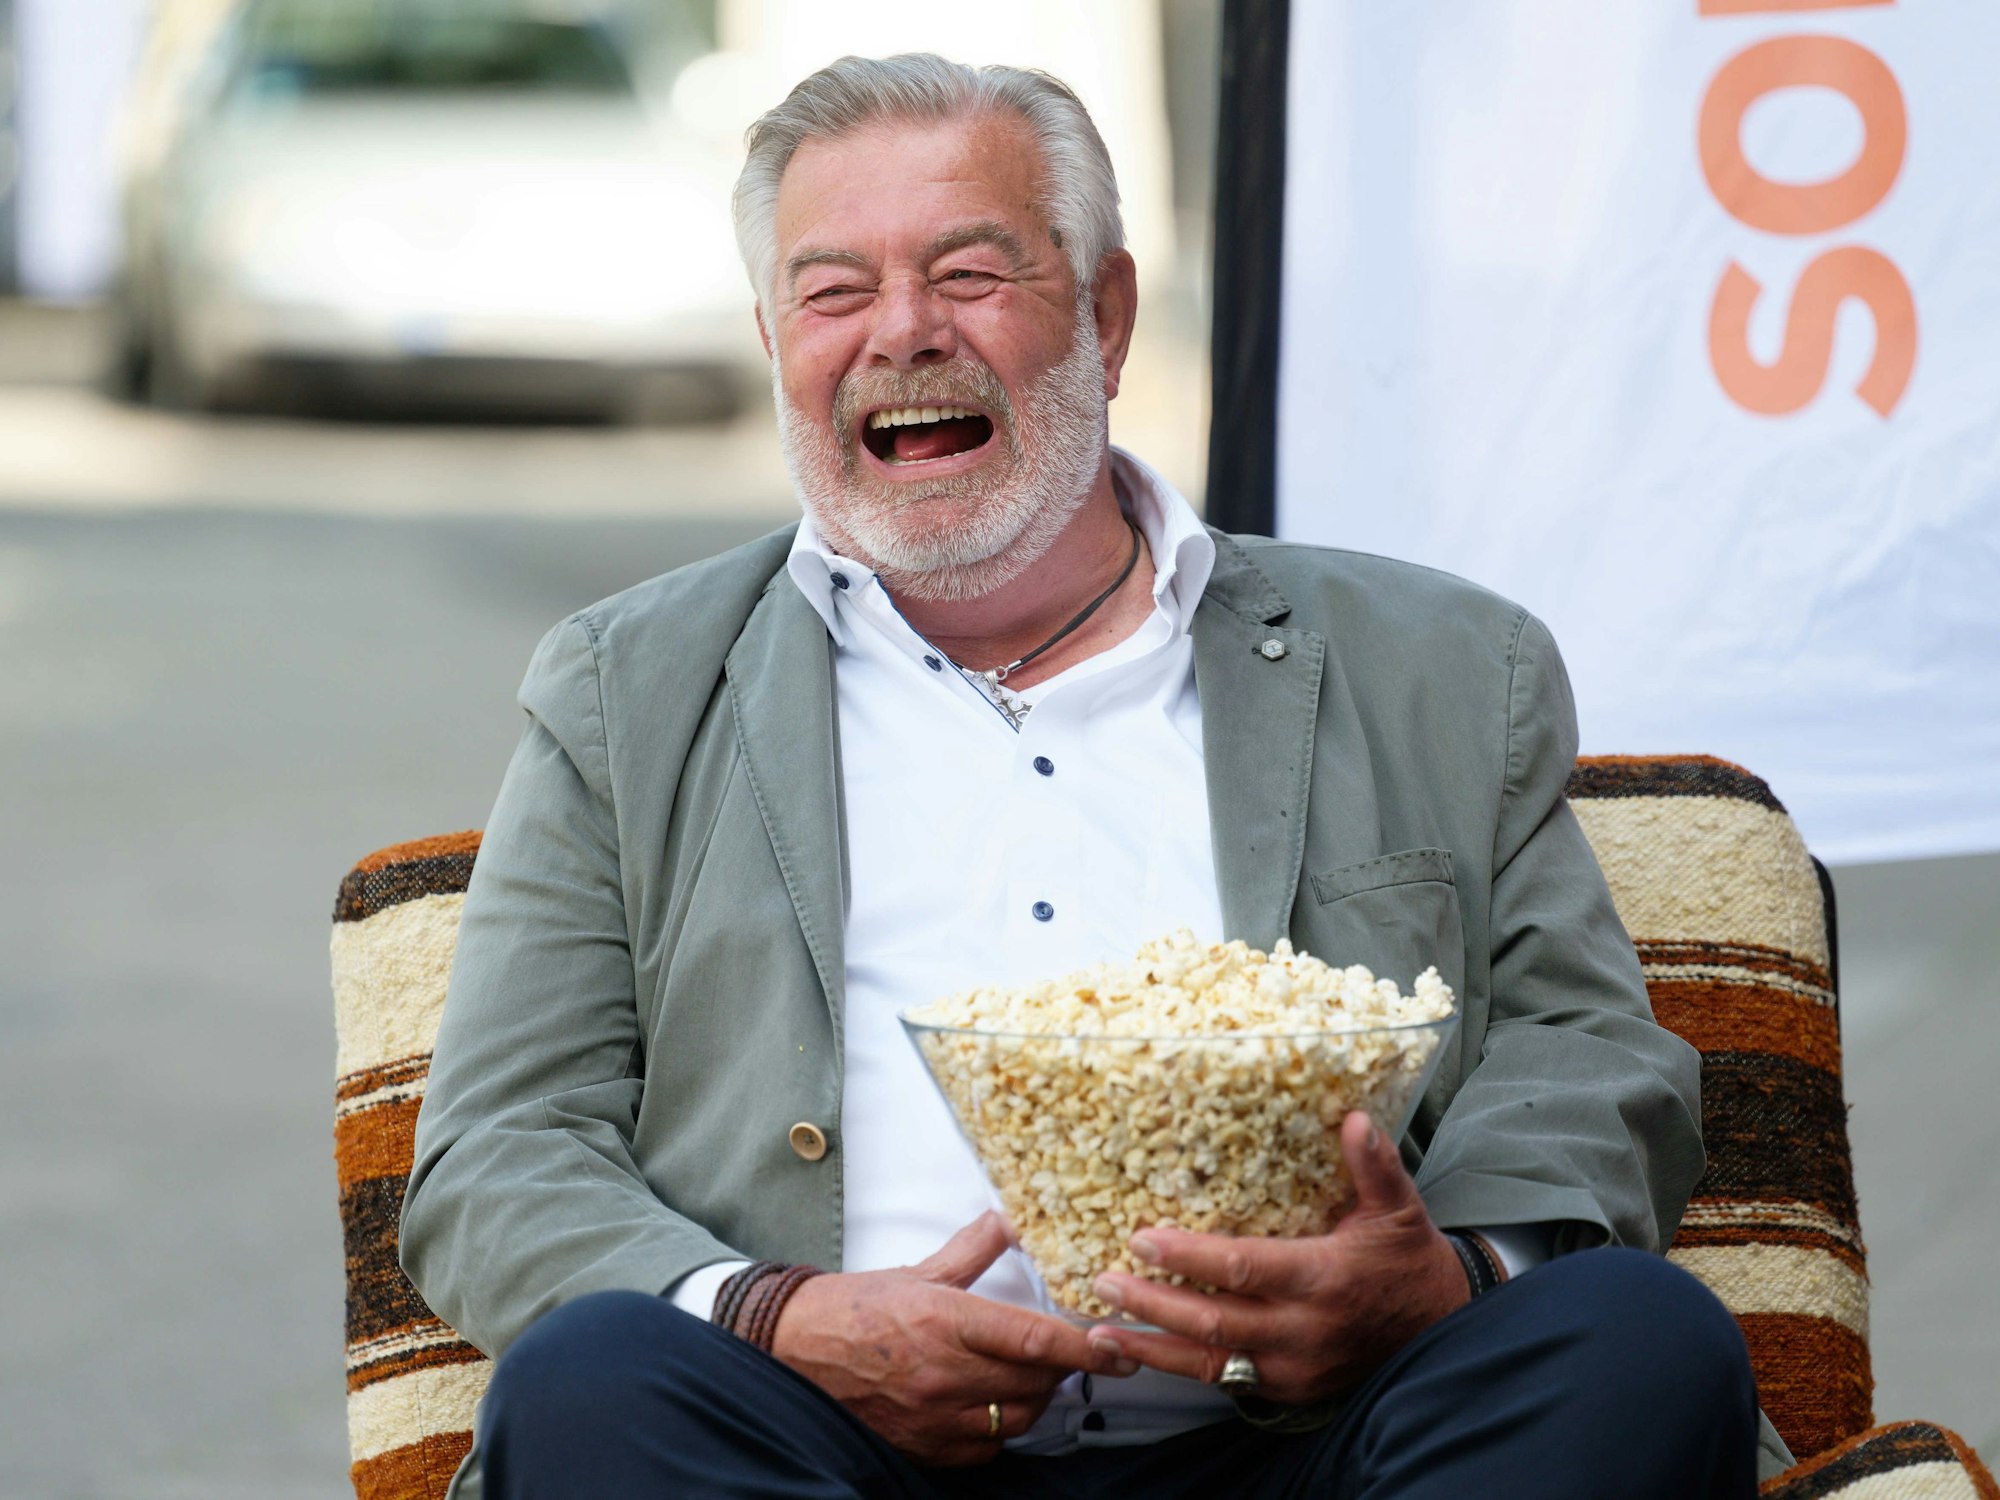 Der Moderator Harry Wijnvoord sitzt bei einem Fototermin vor einer Pressekonferenz zur "Goldene Sonne Spezial", der Gala von sonnenklar.TV auf einem Sessel.